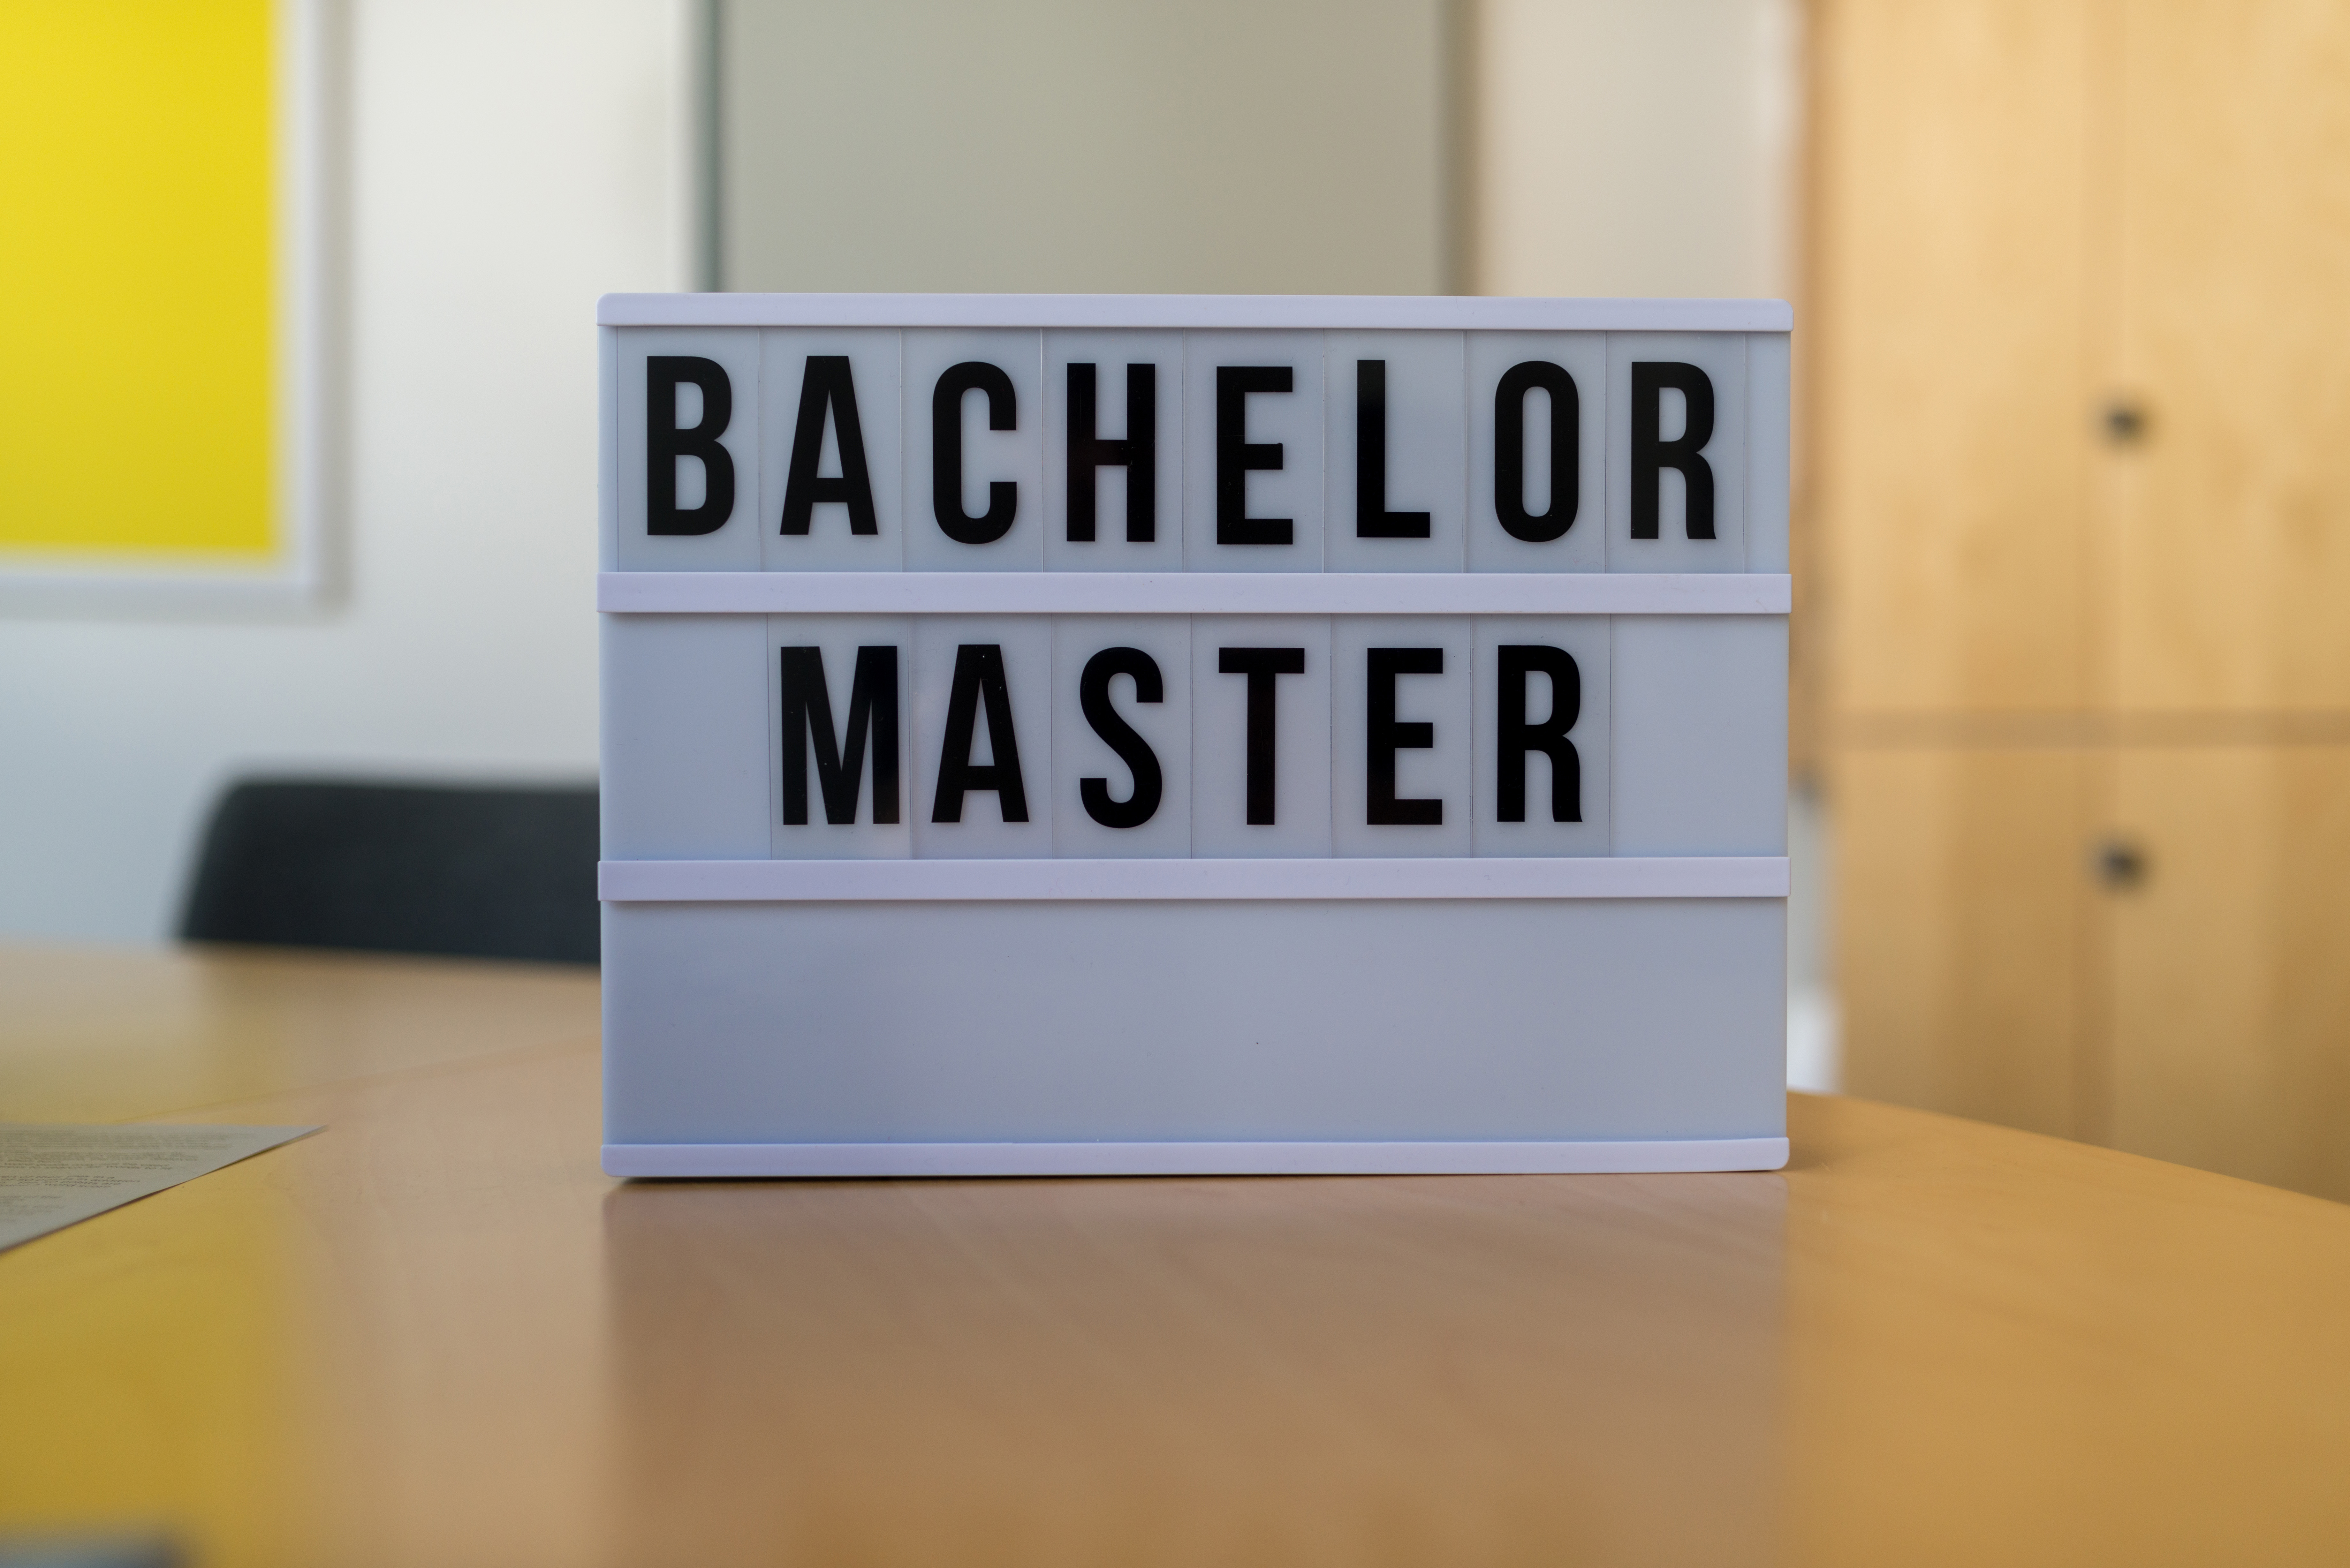 Schild, auf dem Bachelor/Master steht